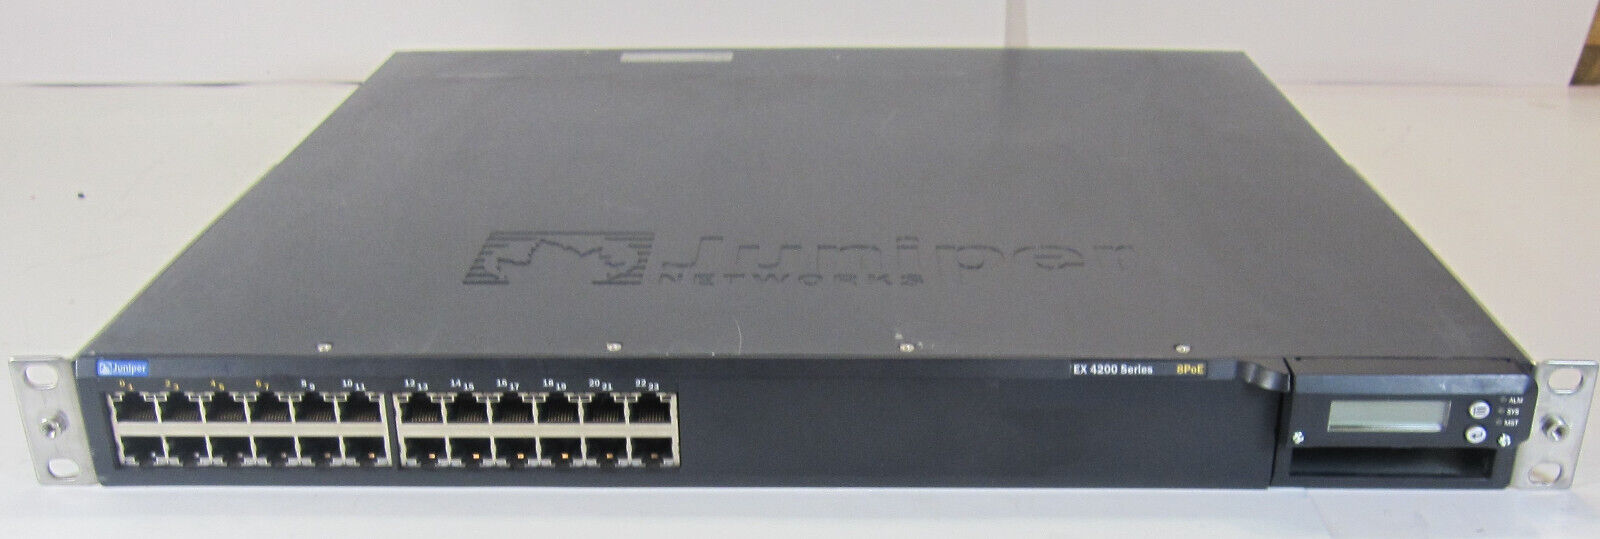 Juniper EX4200 Series 24 Port (8 POE) Gigabit Ethernet Switch EX4200-24T 